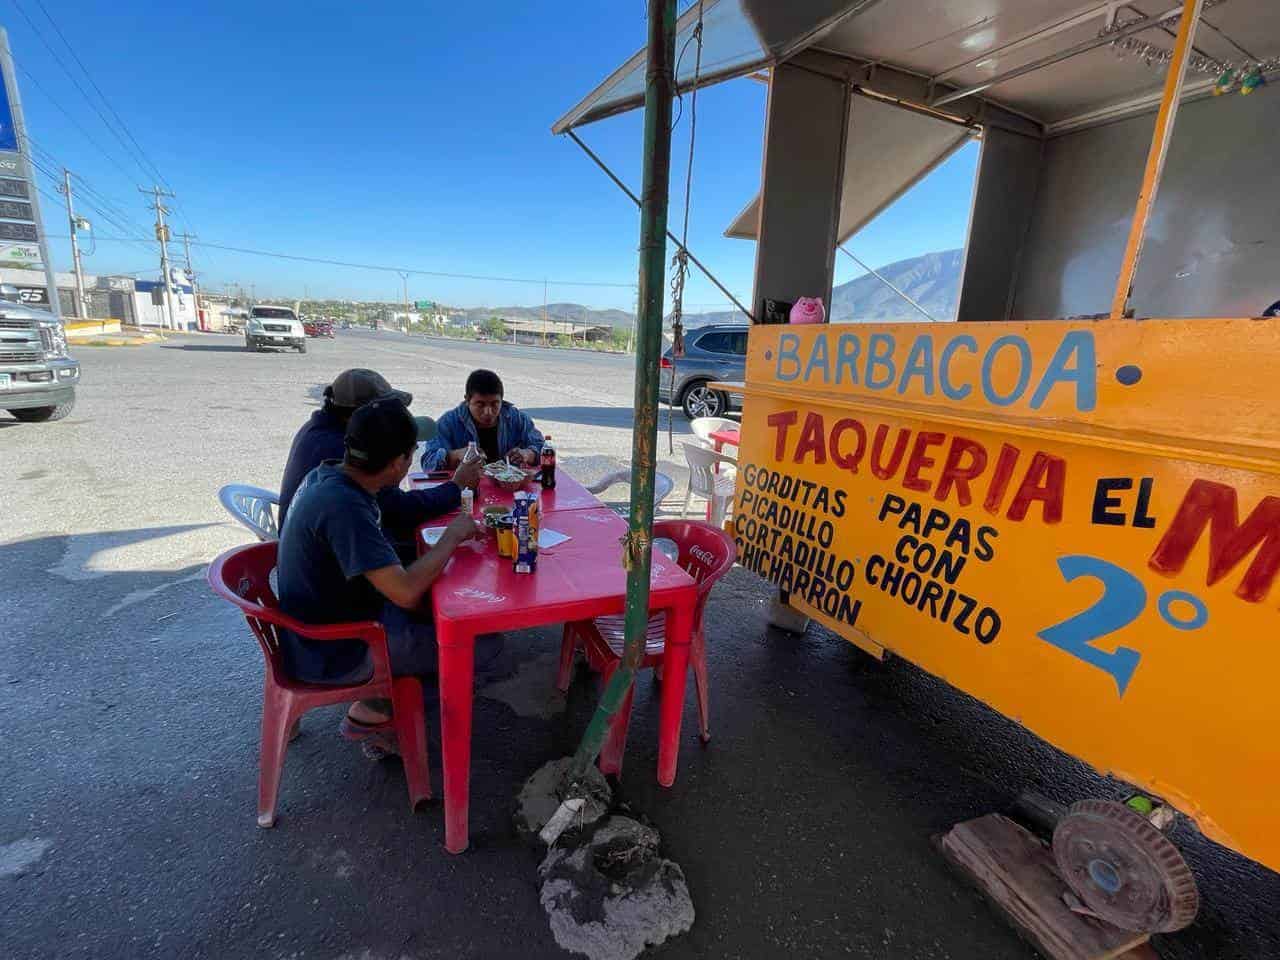 "17 Años de tradición culinaria "Tacos el Mirador" en Castaños